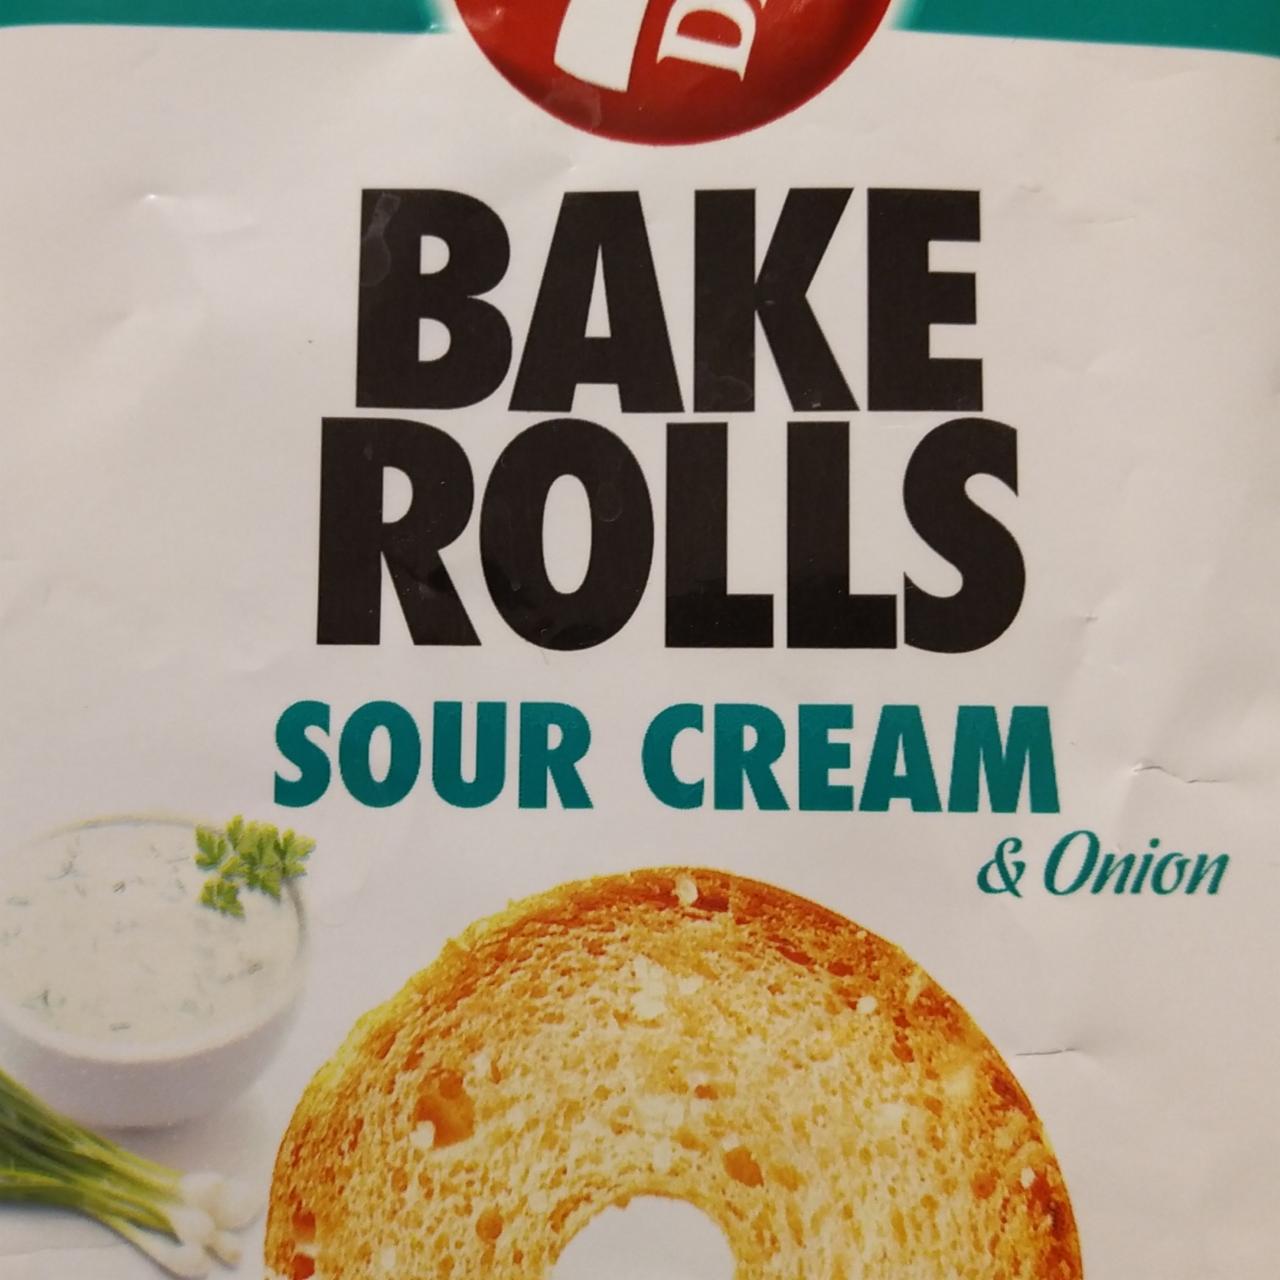 Fotografie - Bake Rolls Sour Cream & Onion 7 Days